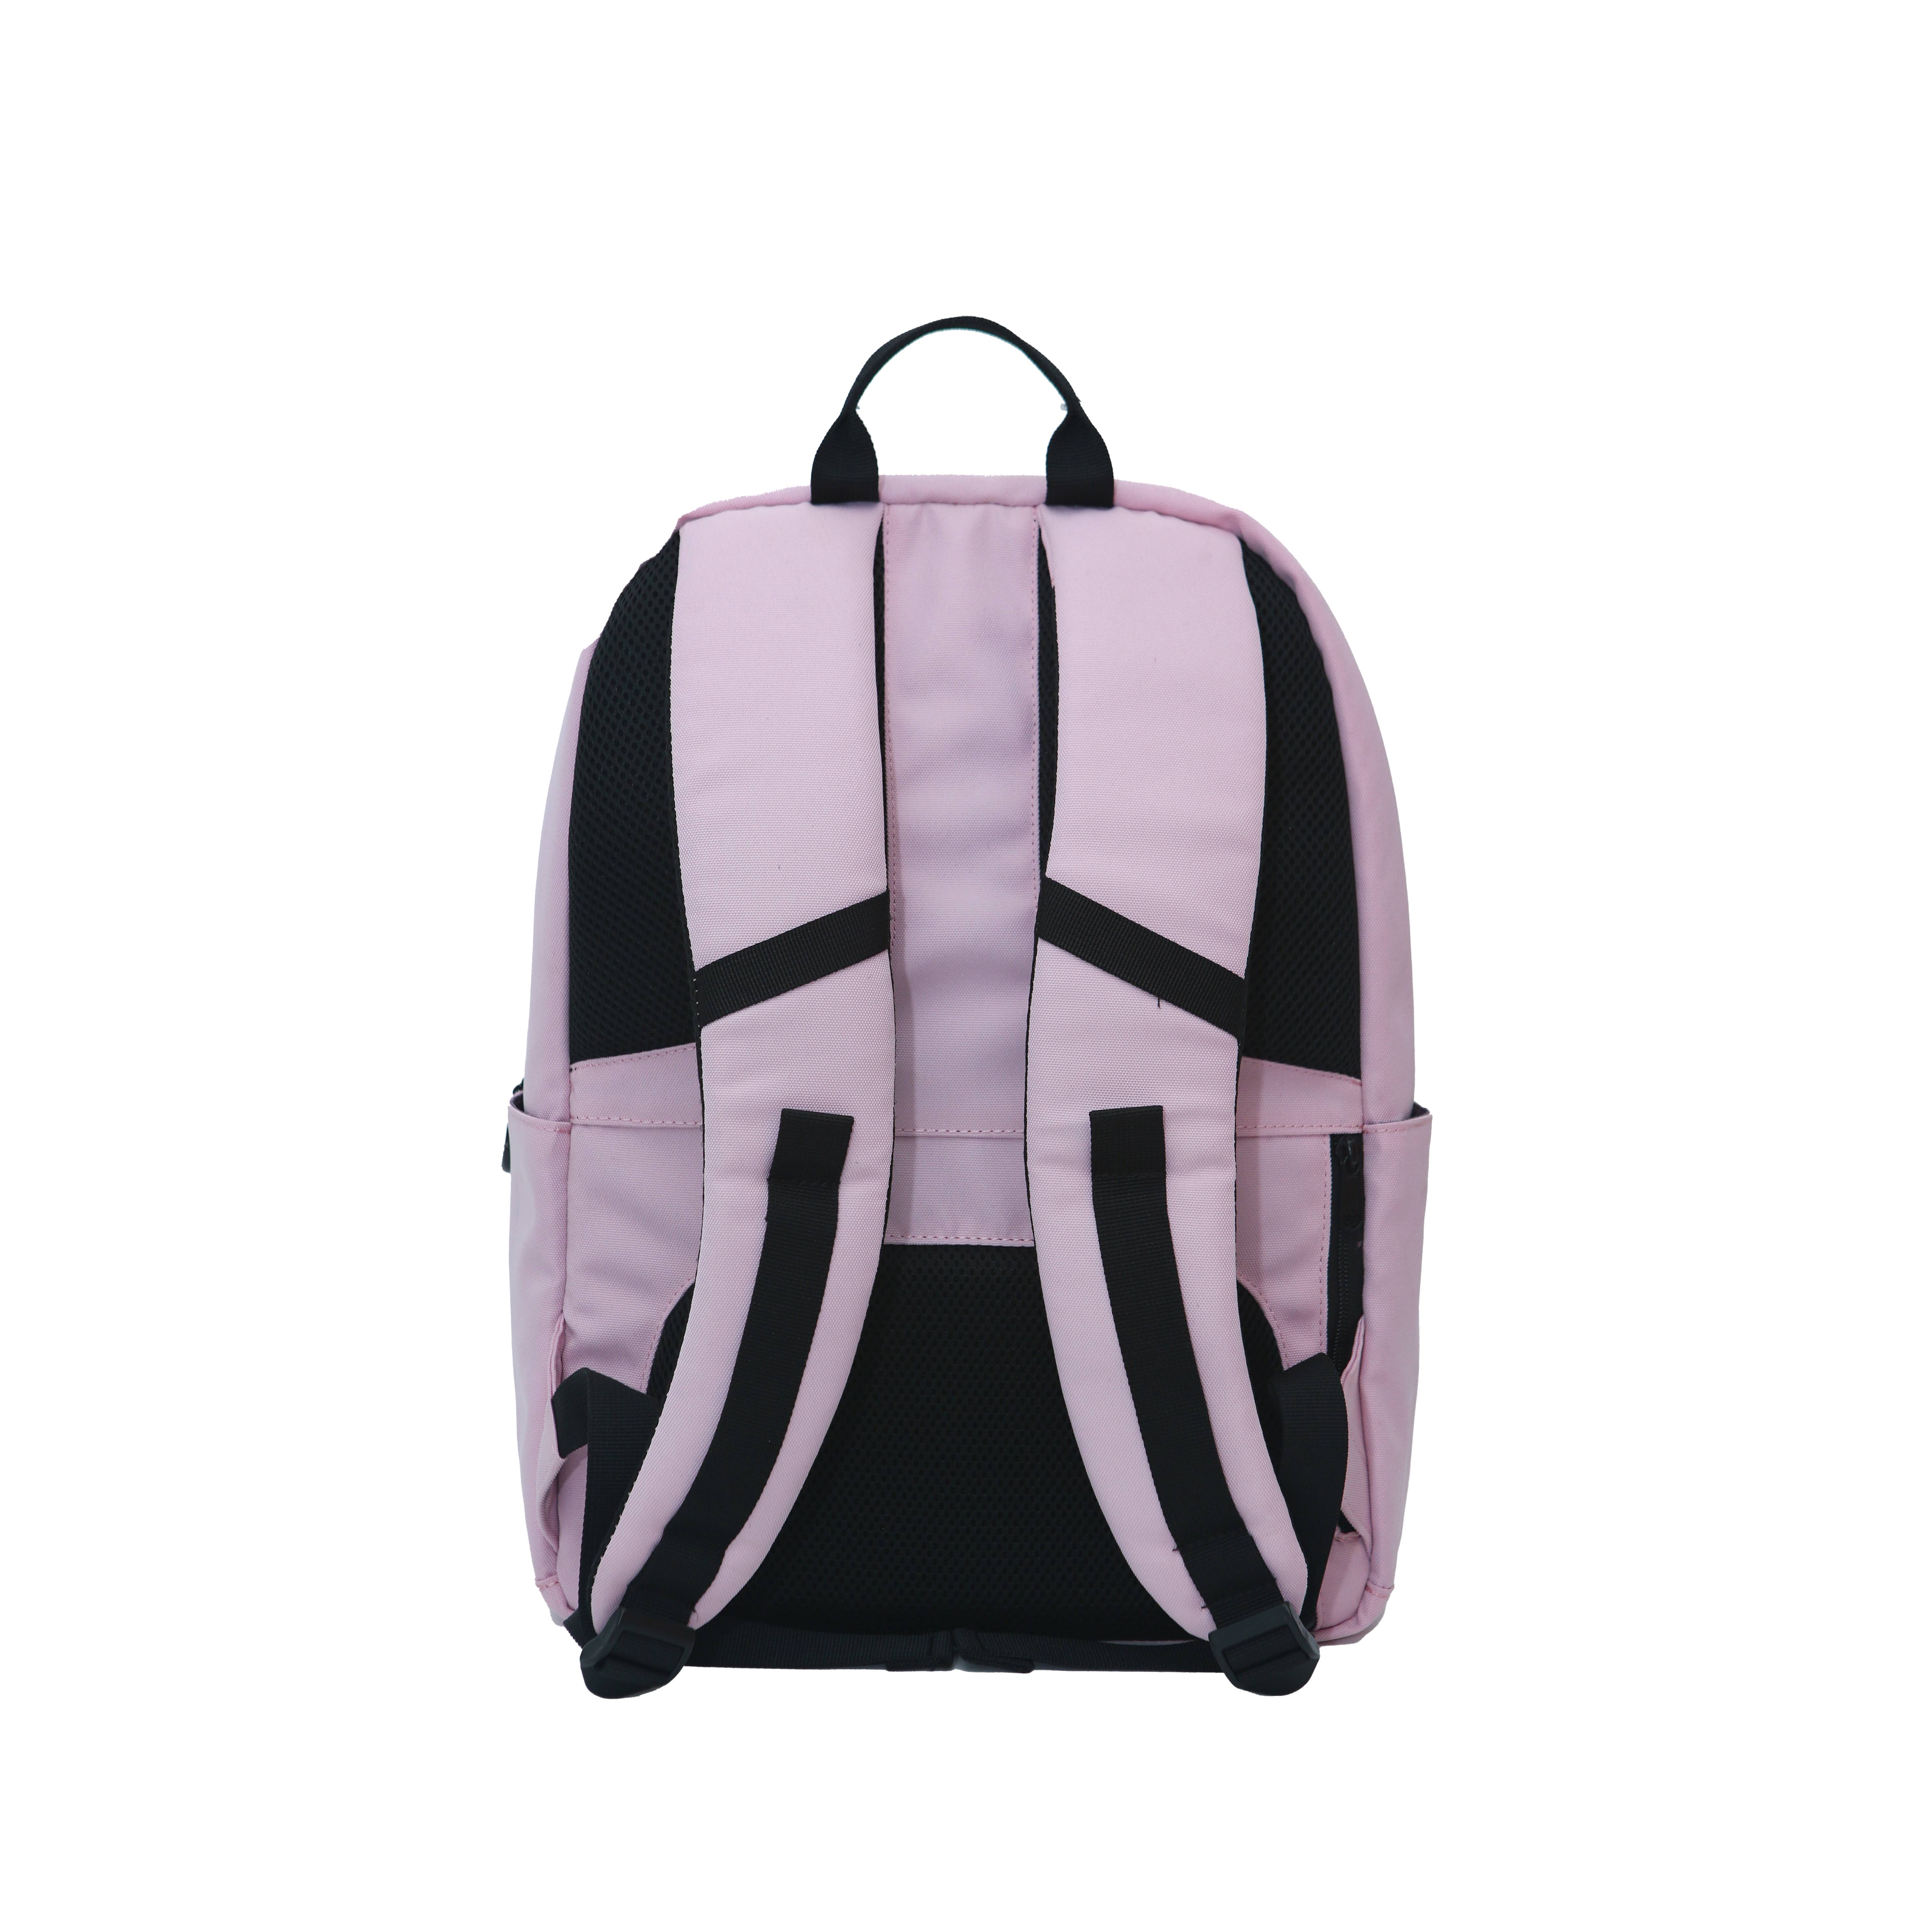 Balo thời trang du lịch unisex Old school Backpack B5 thương hiệu NATOL chất vải canvas nhiều ngăn kháng nước chống sốc cao cấp